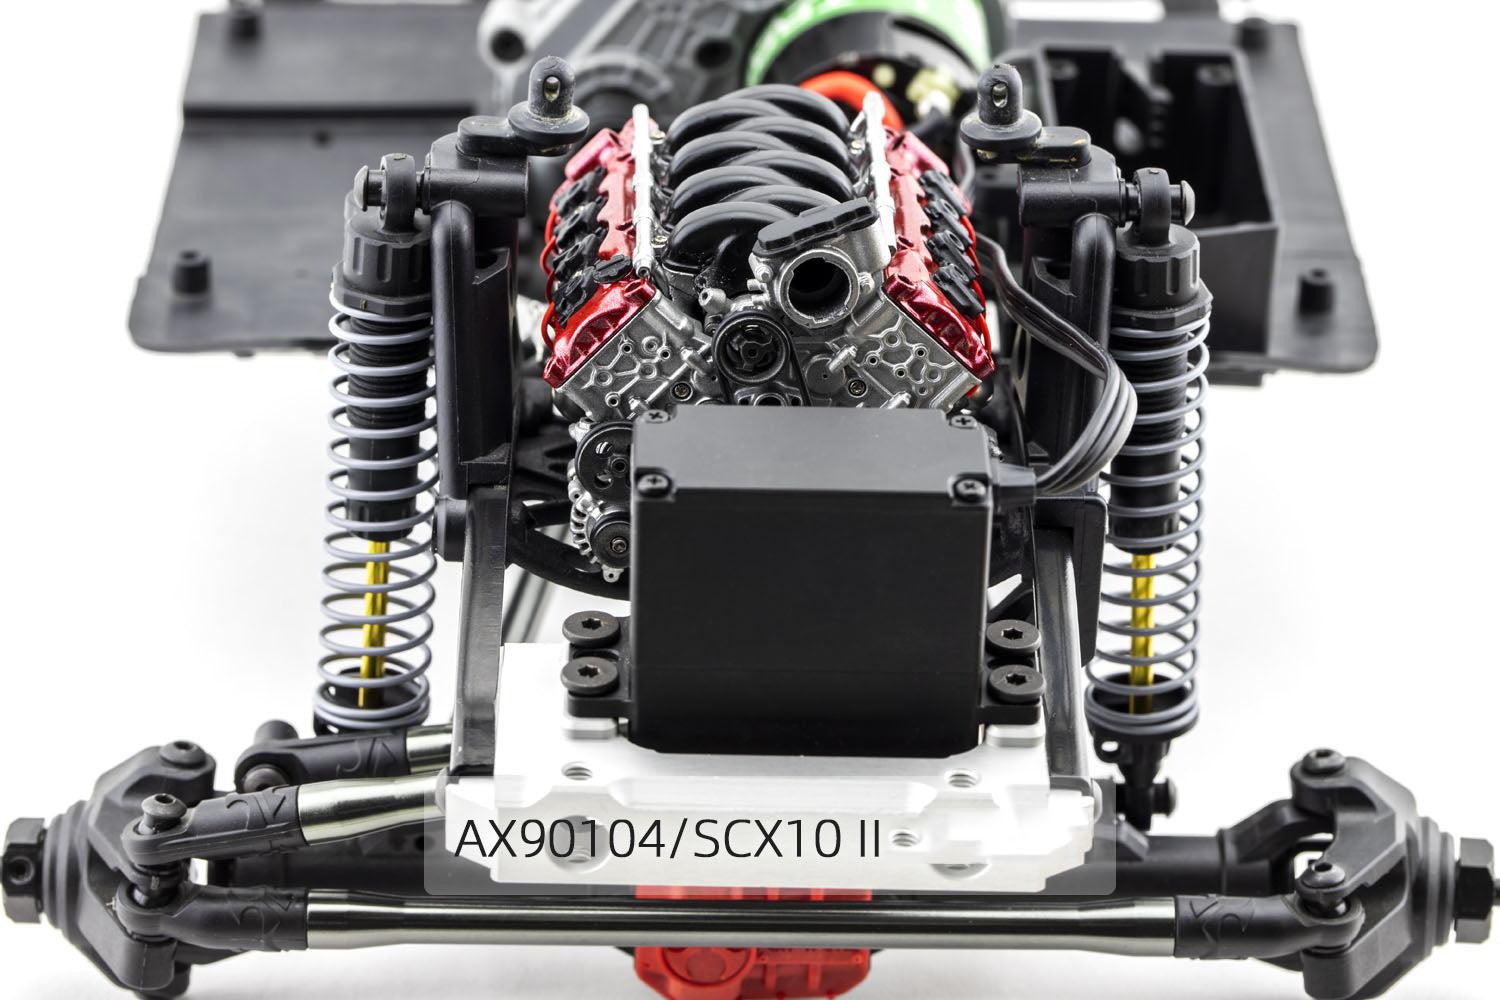 V8 Rc Car: V8 RC Car Design and Building Tips